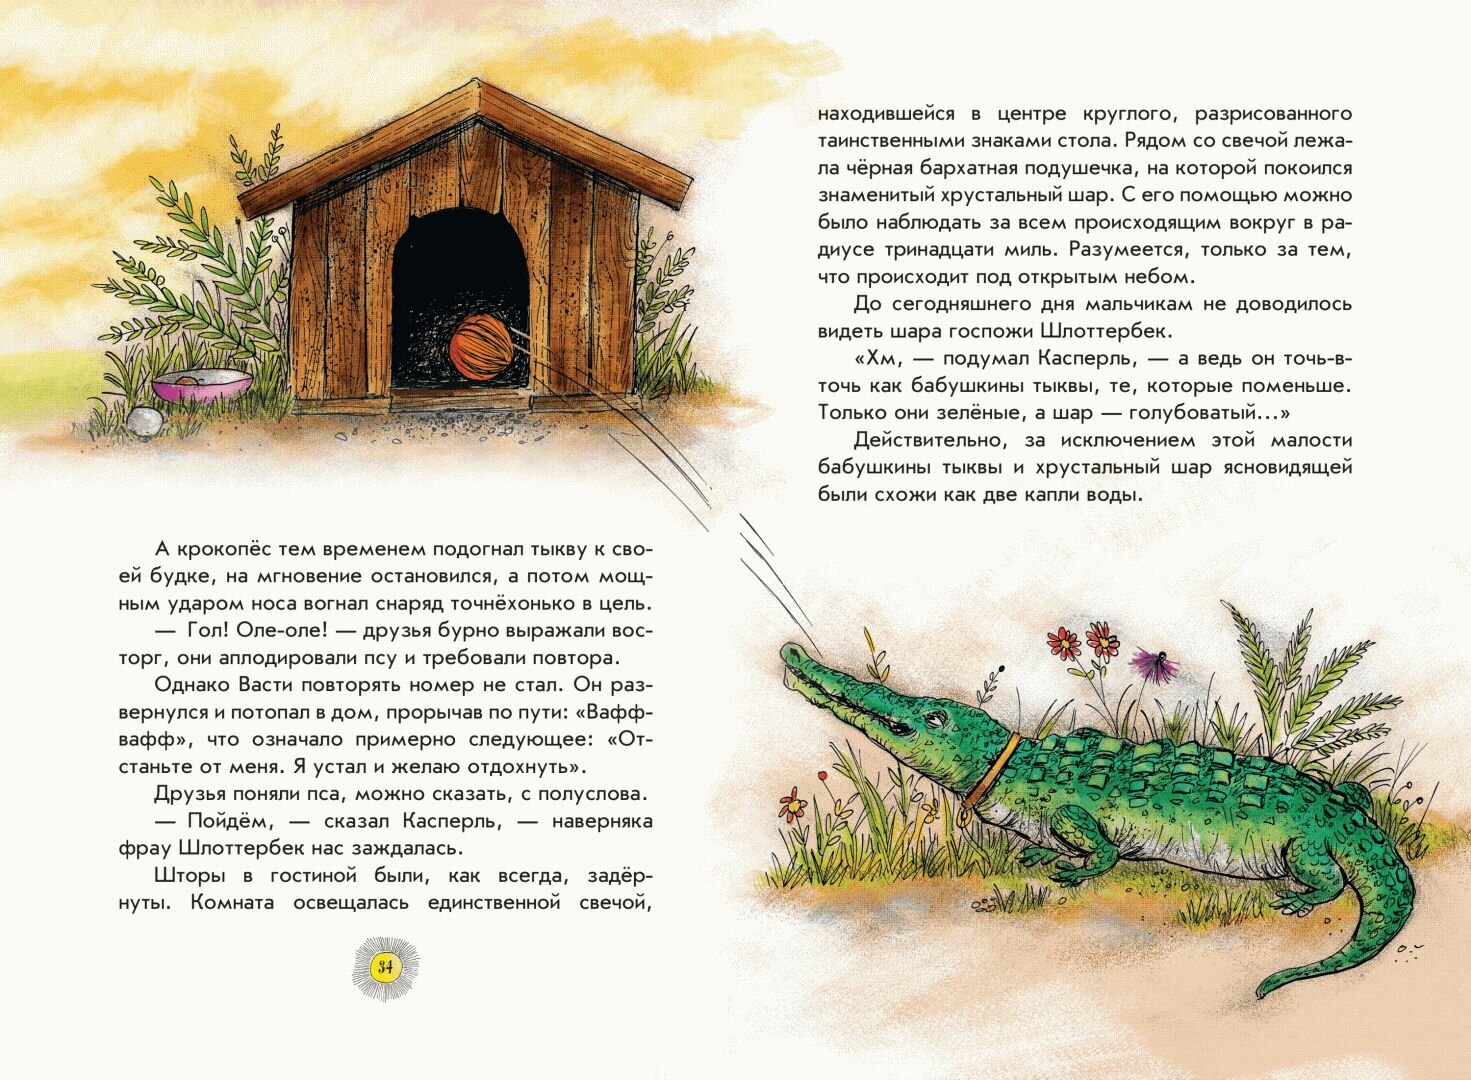 Необычайные приключения разбойника Хотценплотца (ил. Ф. Триппа) - фото №16